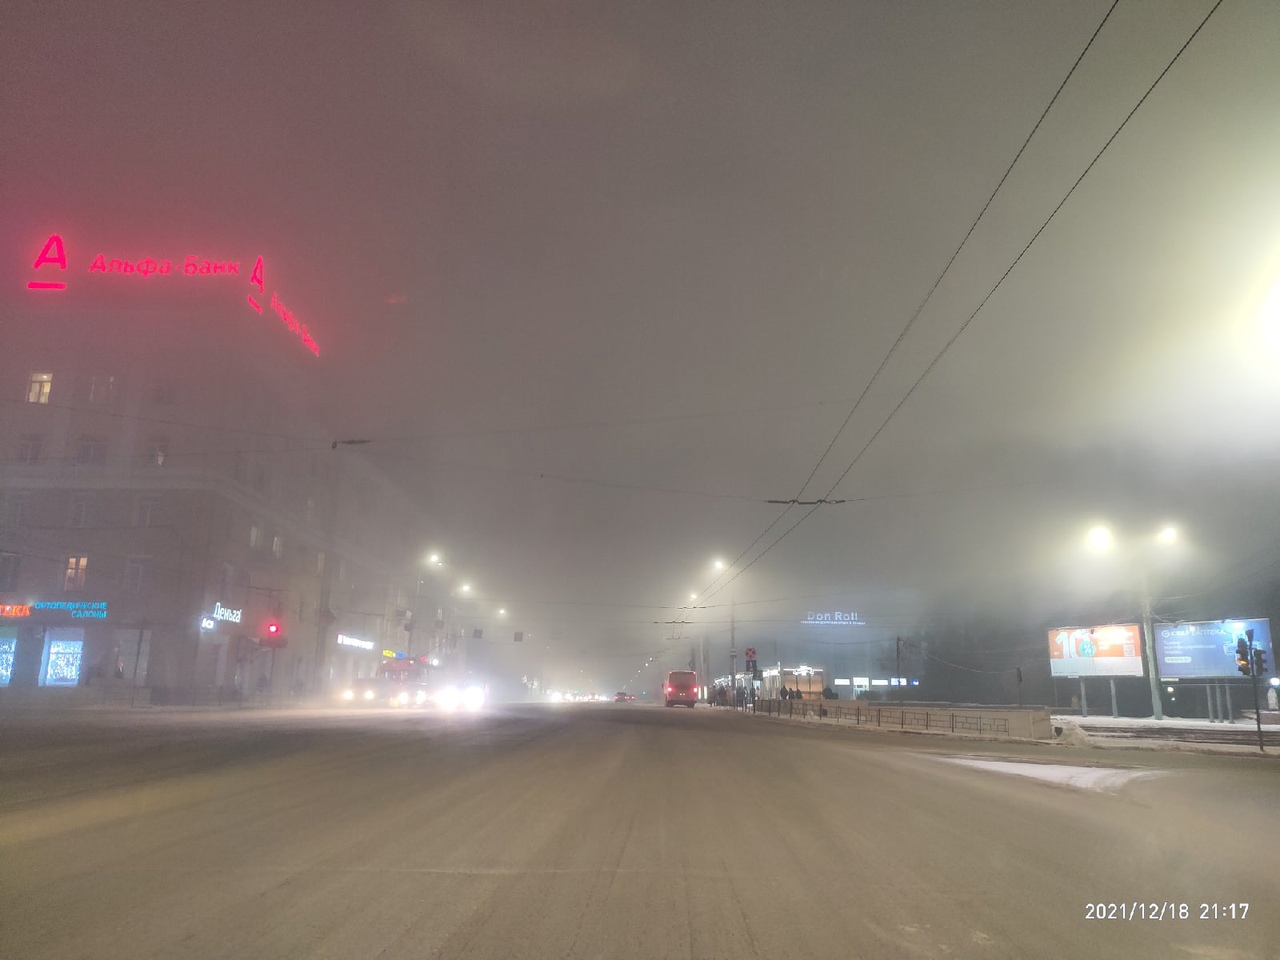 В Омске хотят газифицировать 14 тысяч частных домов, чтобы снизить выбросы #Новости #Общество #Омск